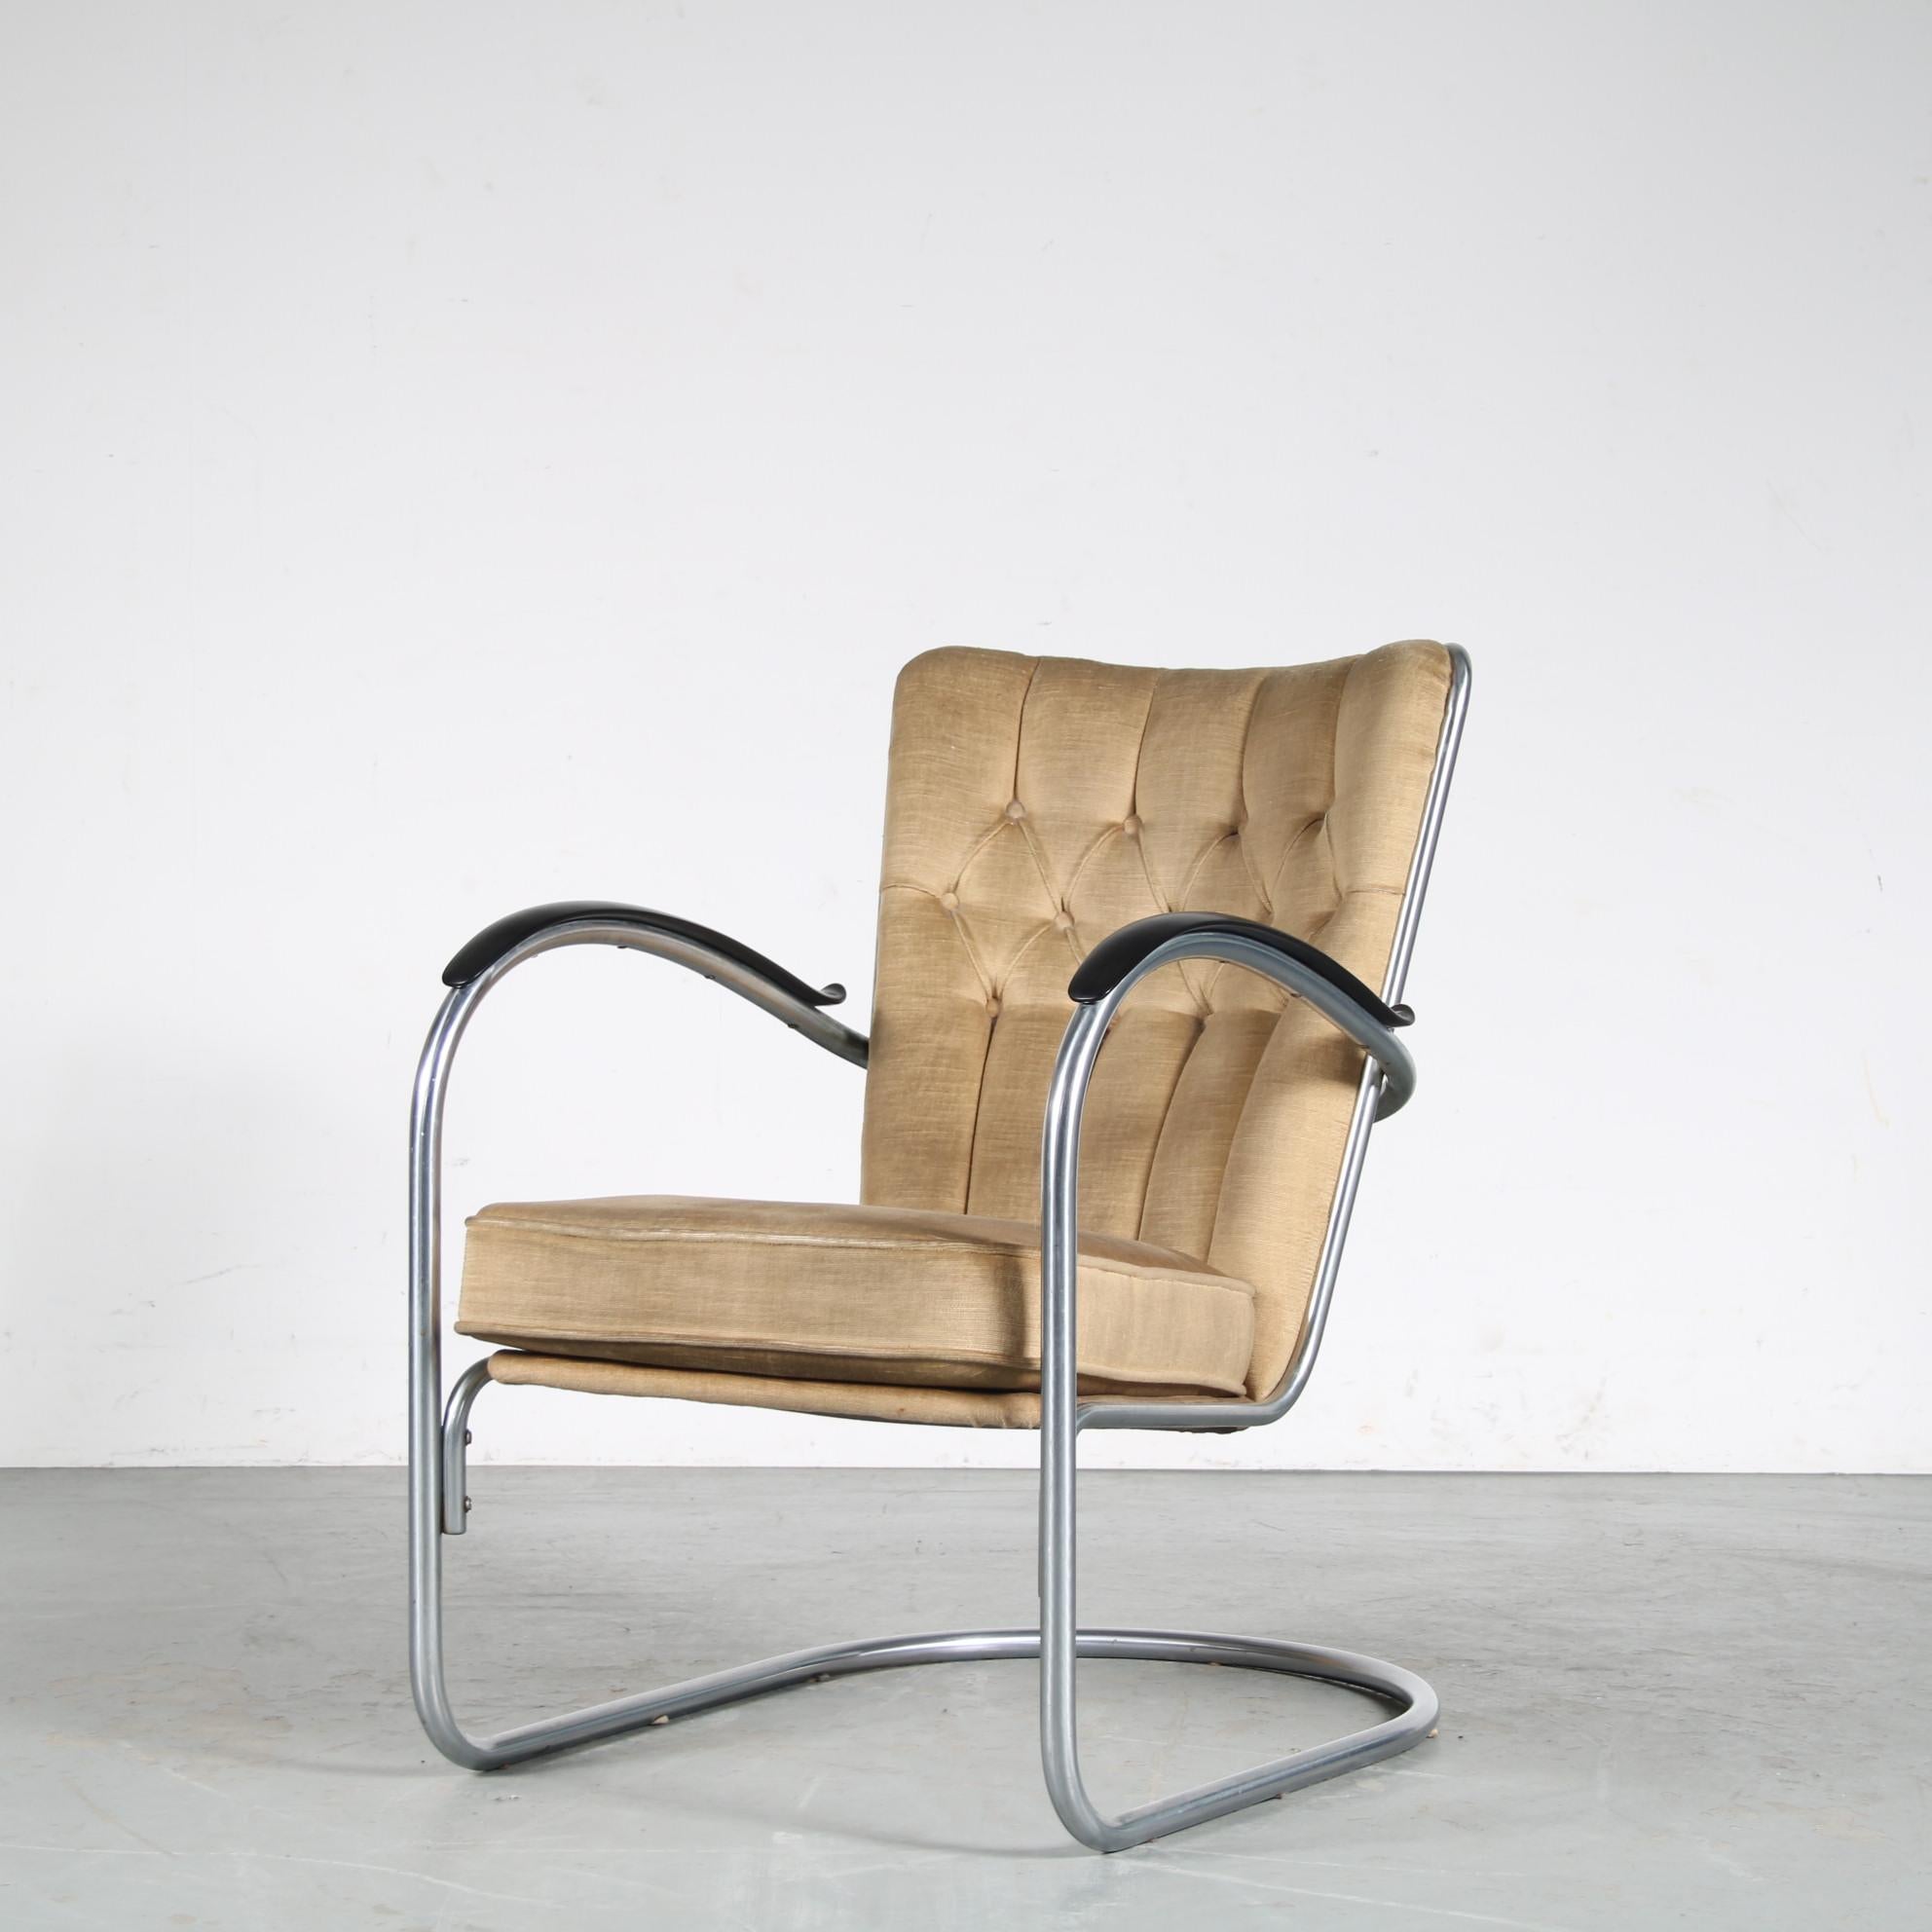 Ein schöner Sessel aus den Niederlanden, hergestellt von Gispen und entworfen von W.H. Gispen um 1950.

Dieser Stuhl, Modell 